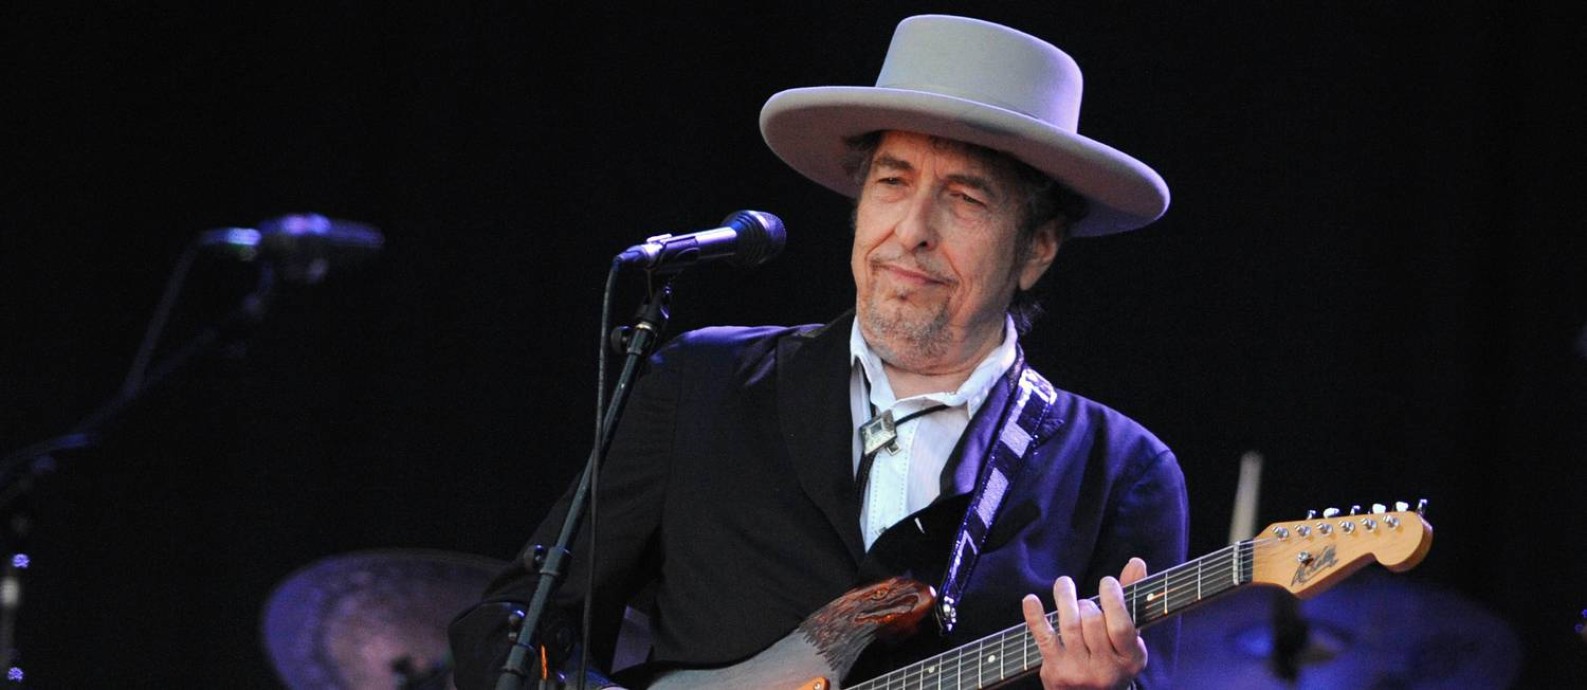 Bob Dylan durante show na França, em 2012 Foto: FRED TANNEAU / AFP